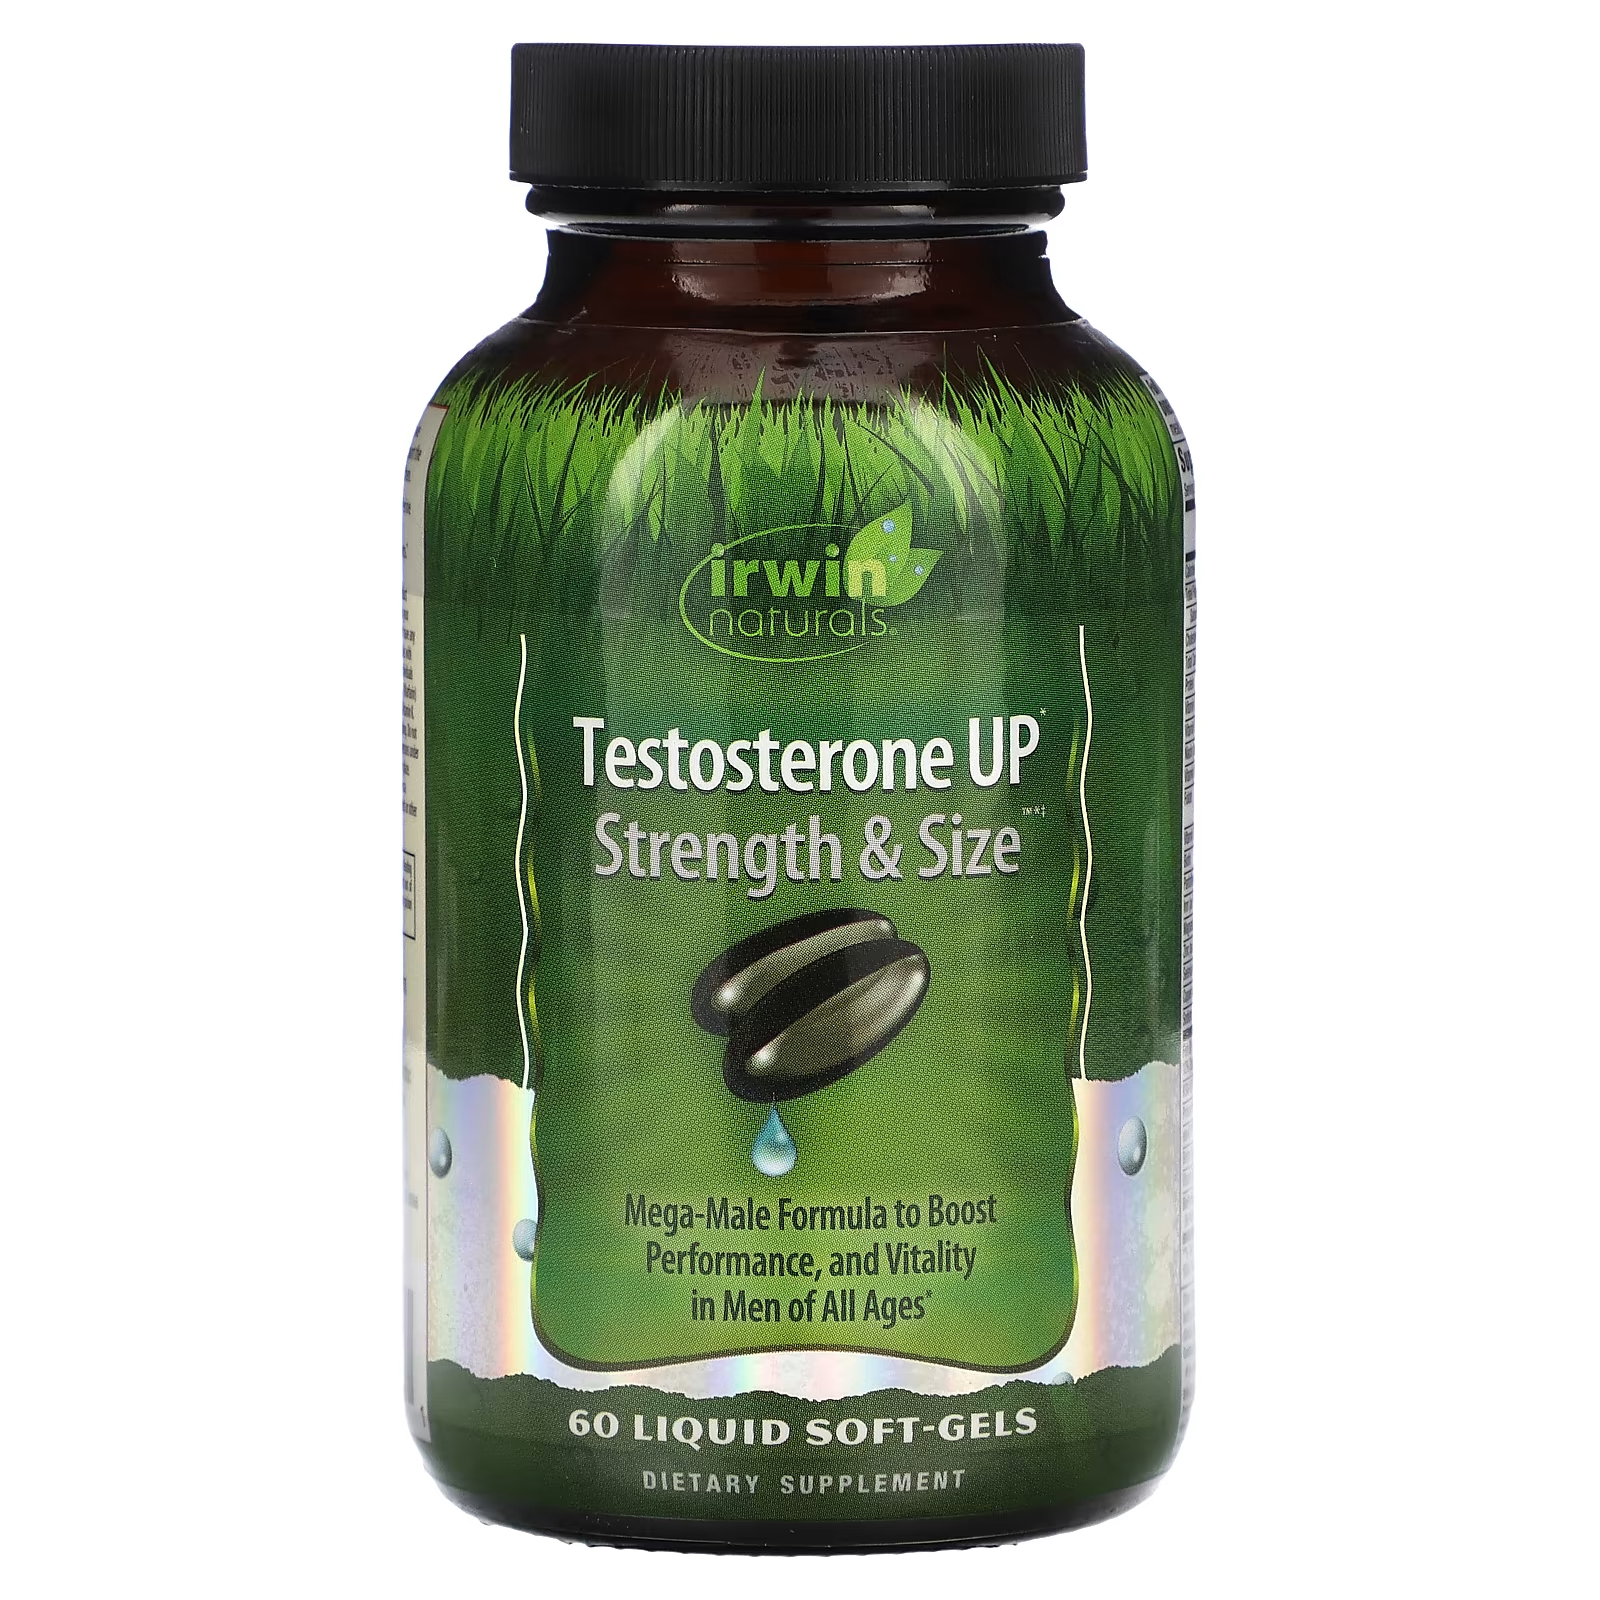 Пищевая добавка Irwin Naturals Testosterone Up Strength & Size, 60 жидких таблеток rsp nutrition prime t добавка для повышения уровня тестостерона 60 таблеток